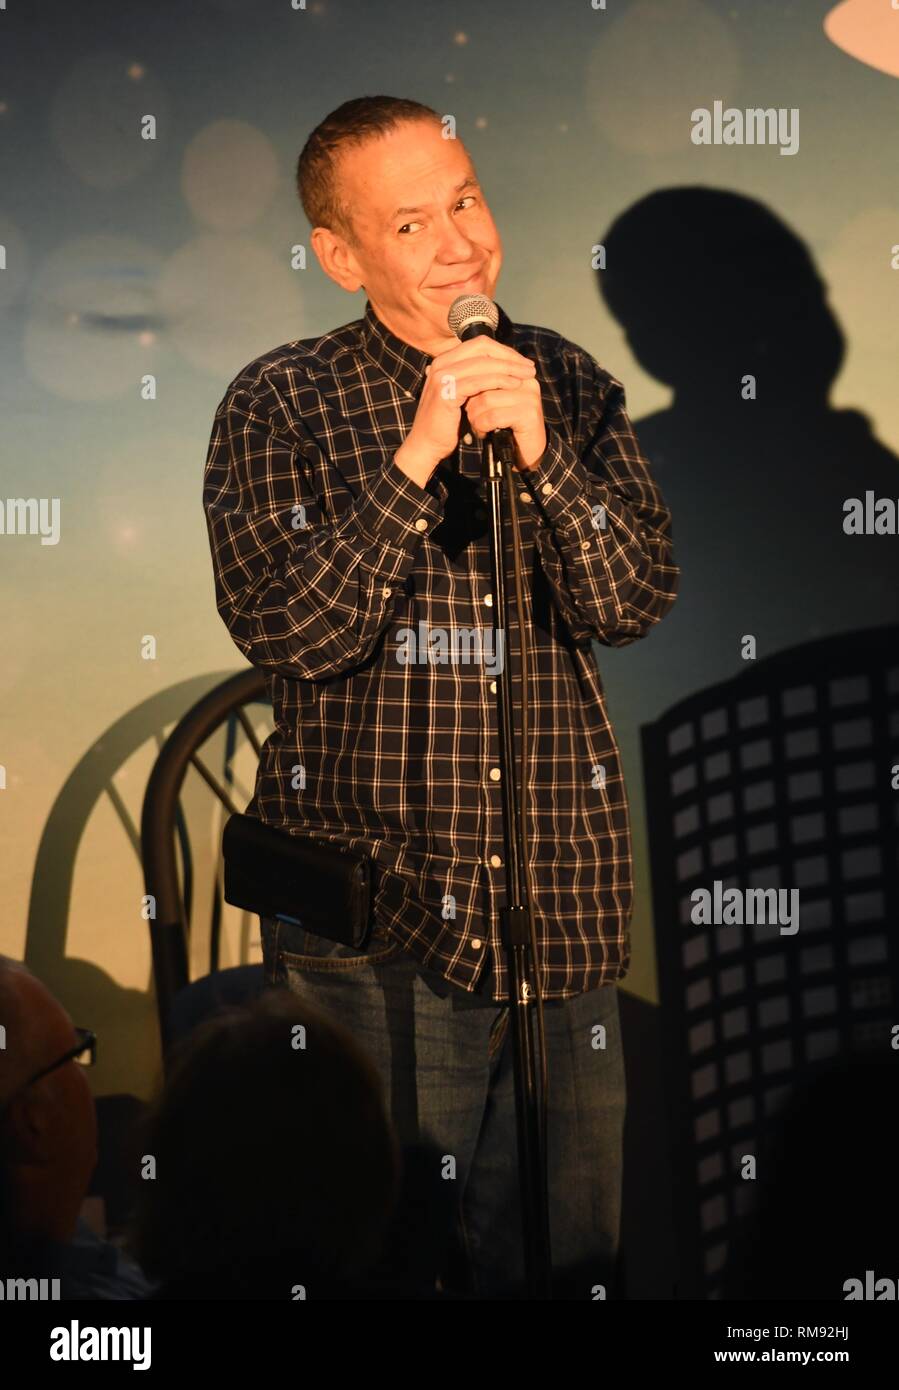 Schauspieler Gilbert Gottfried wird gezeigt auf der Bühne während eines Stand up Comedy aussehen. Stockfoto